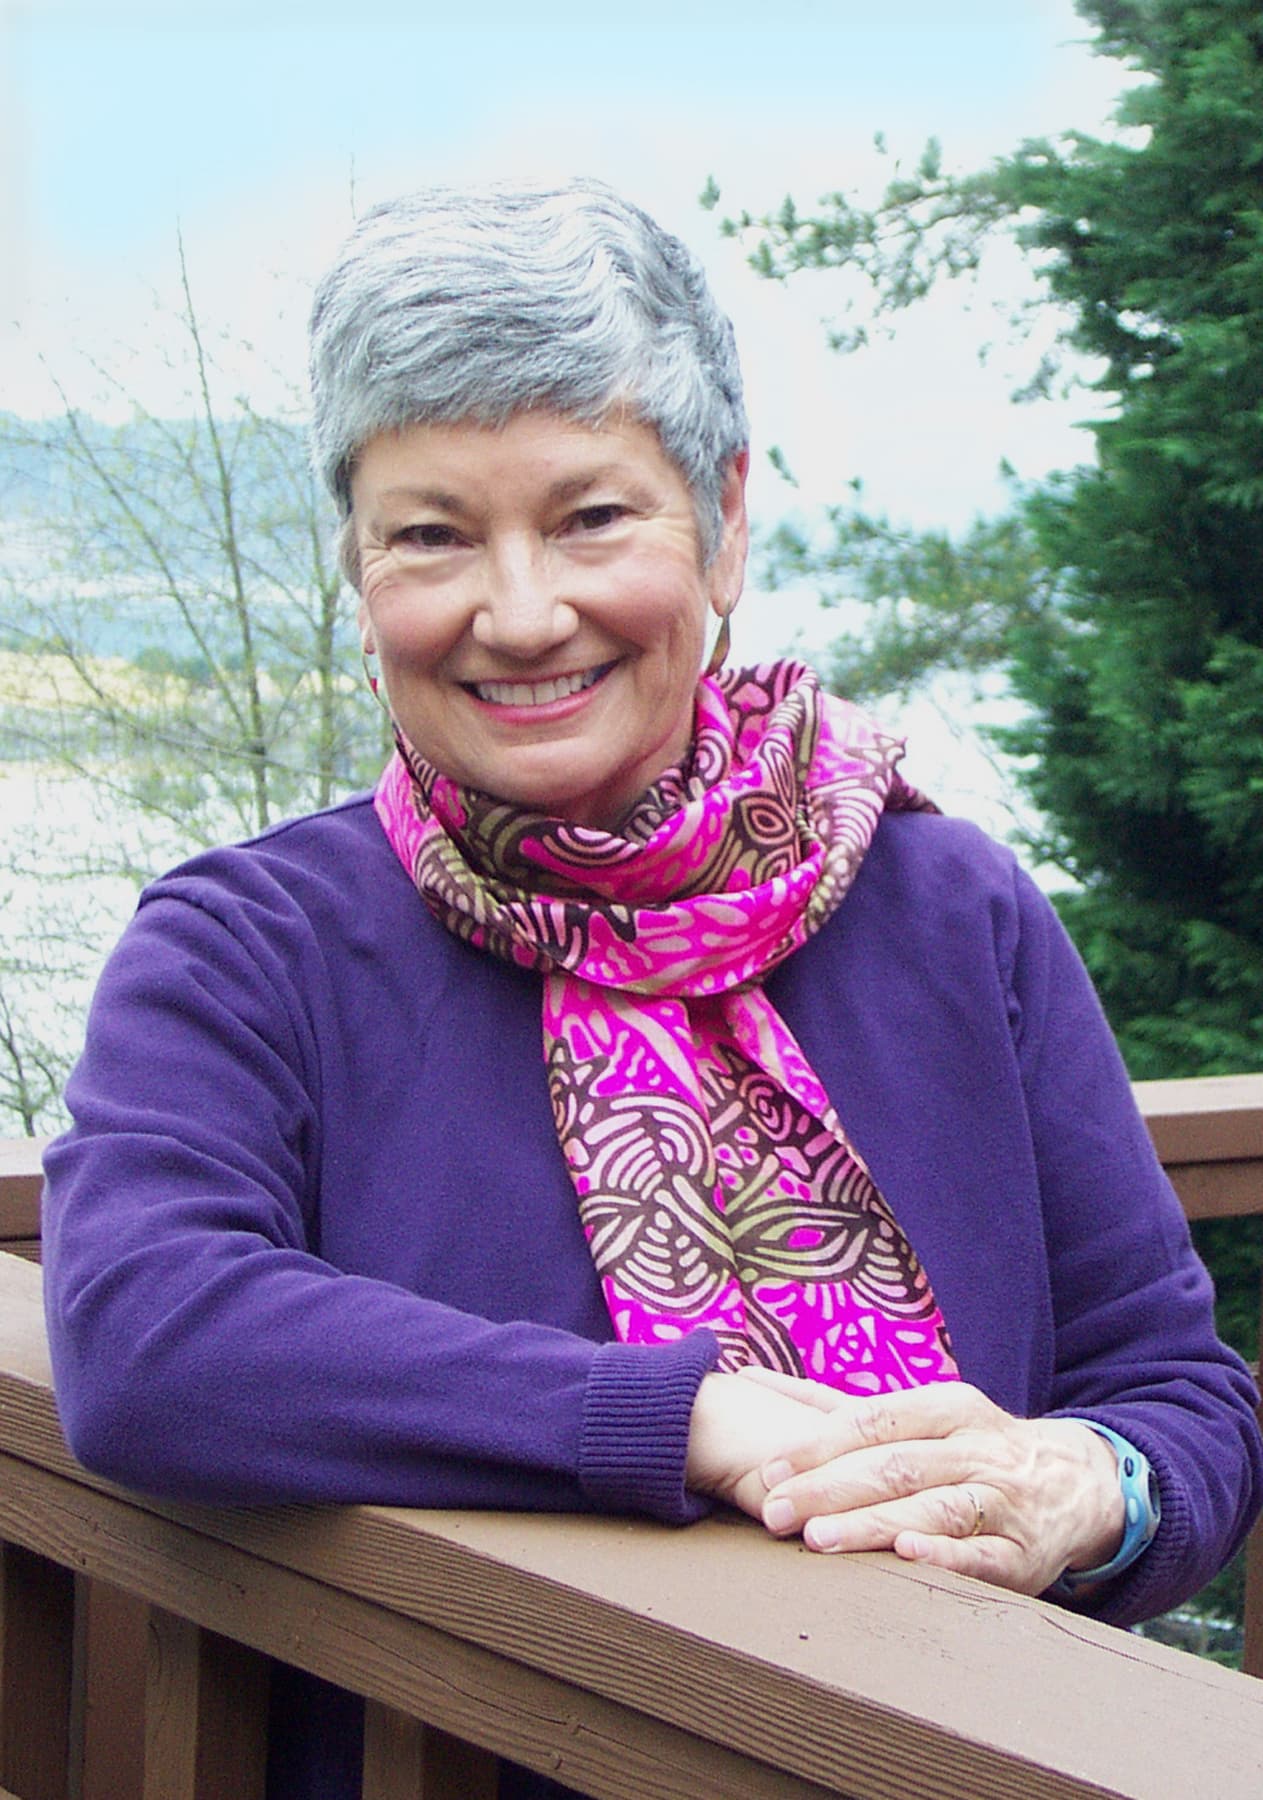 Author Linda Lovely